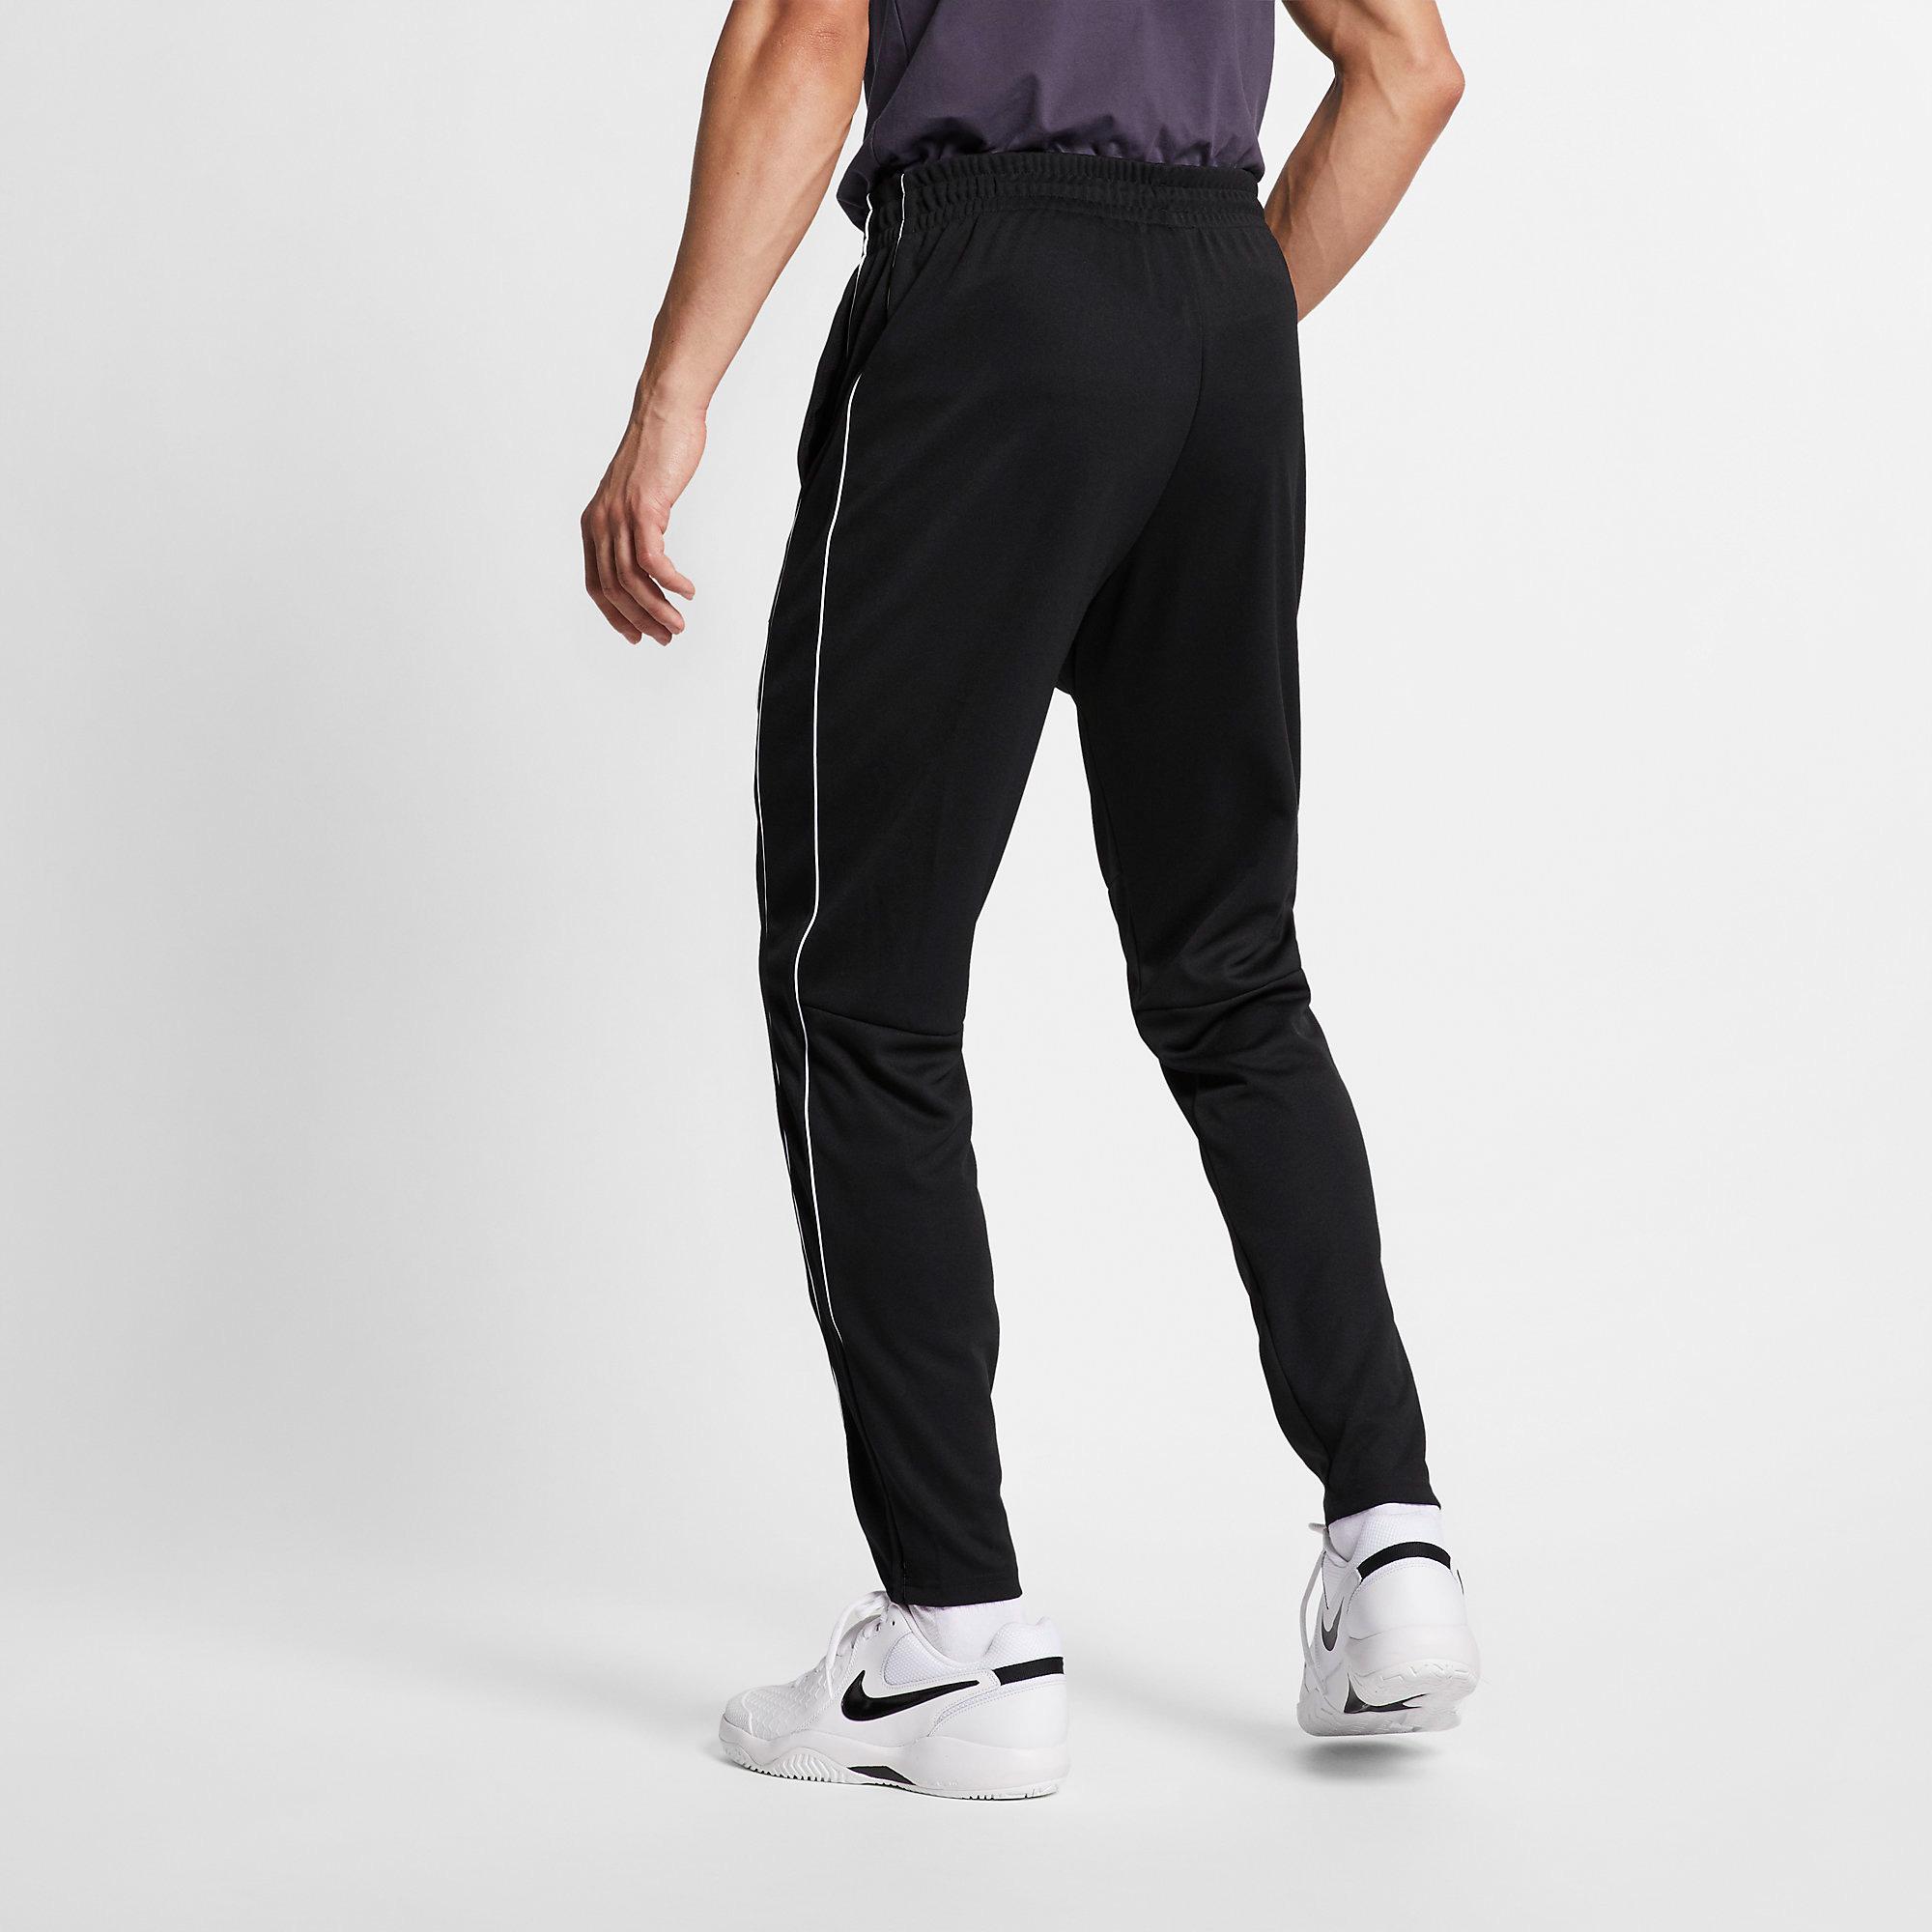 Nike Mens Essential Tracksuit - Black/White - Tennisnuts.com